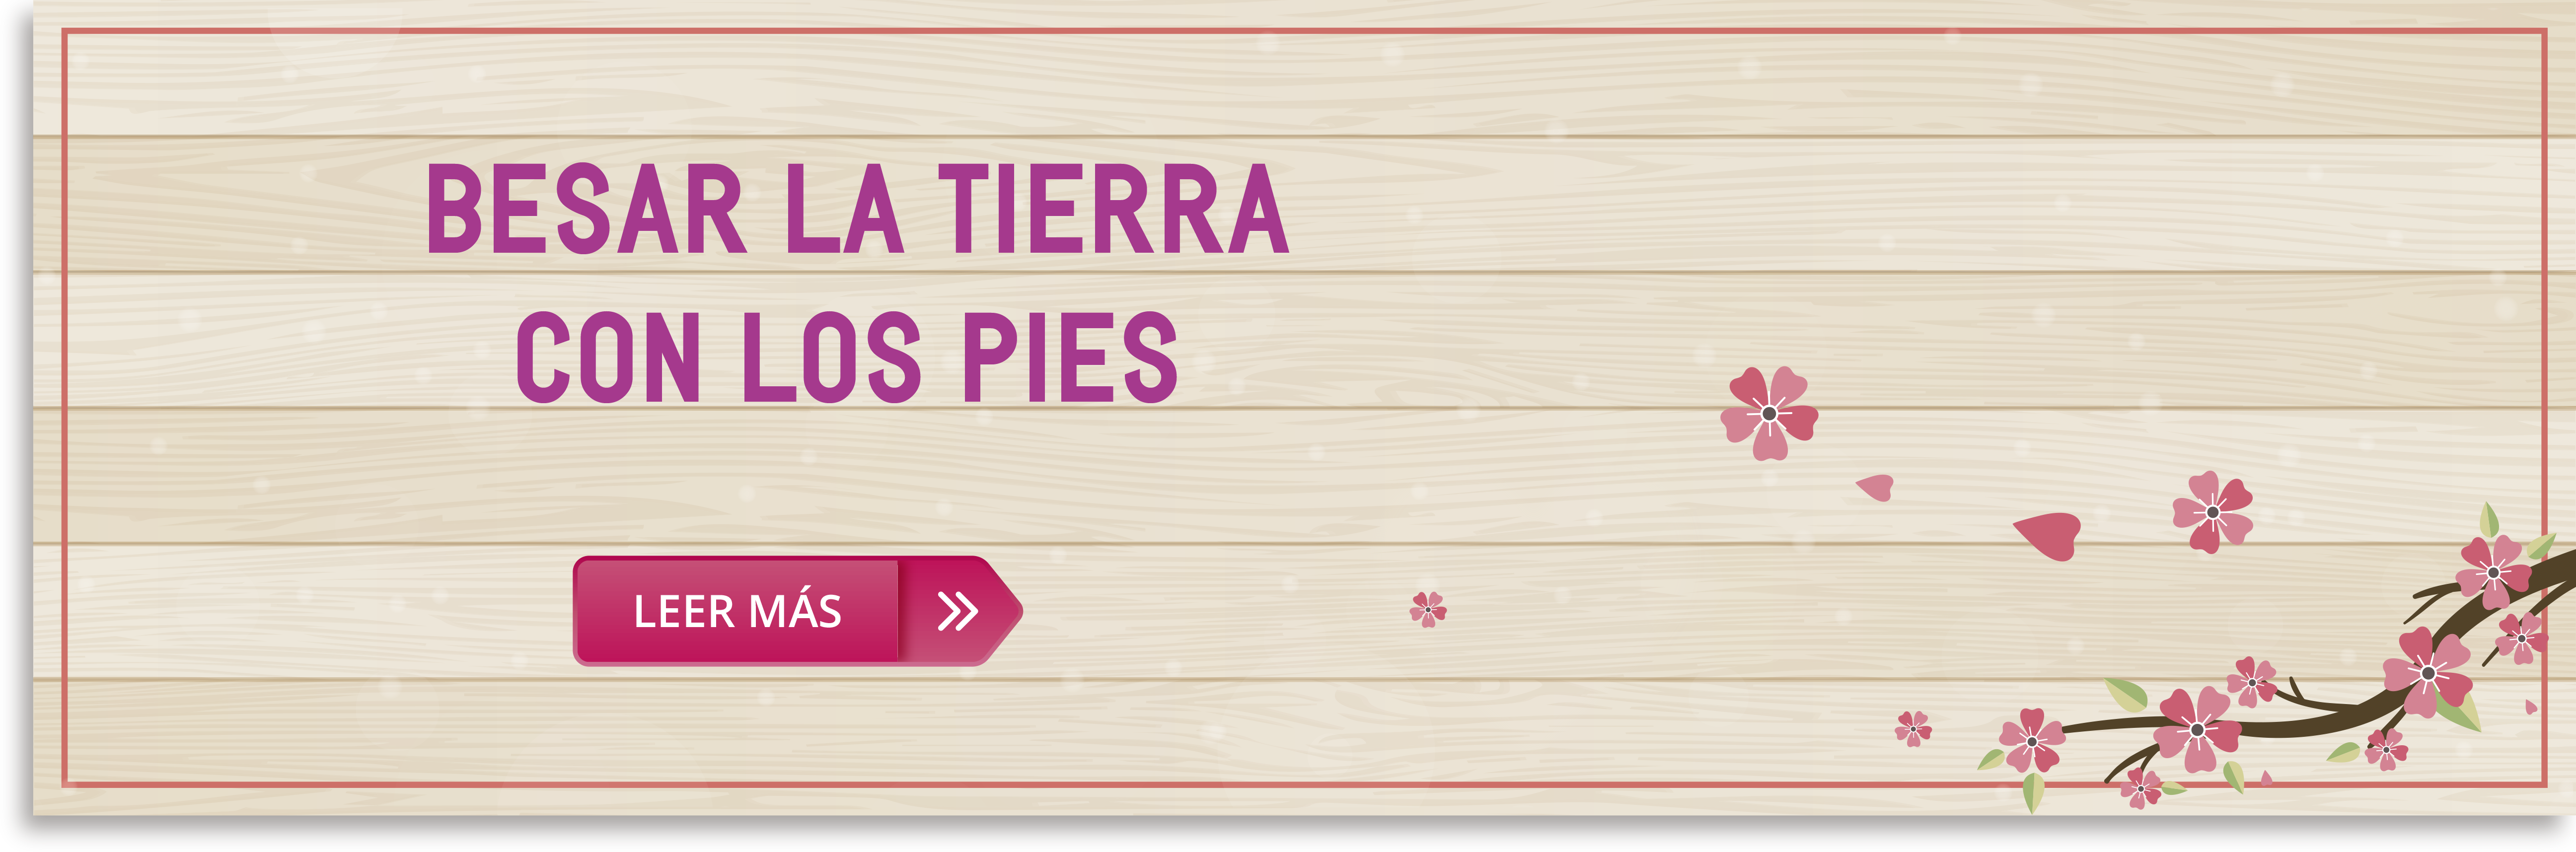 besar_la_tierra_con_los_pies.png